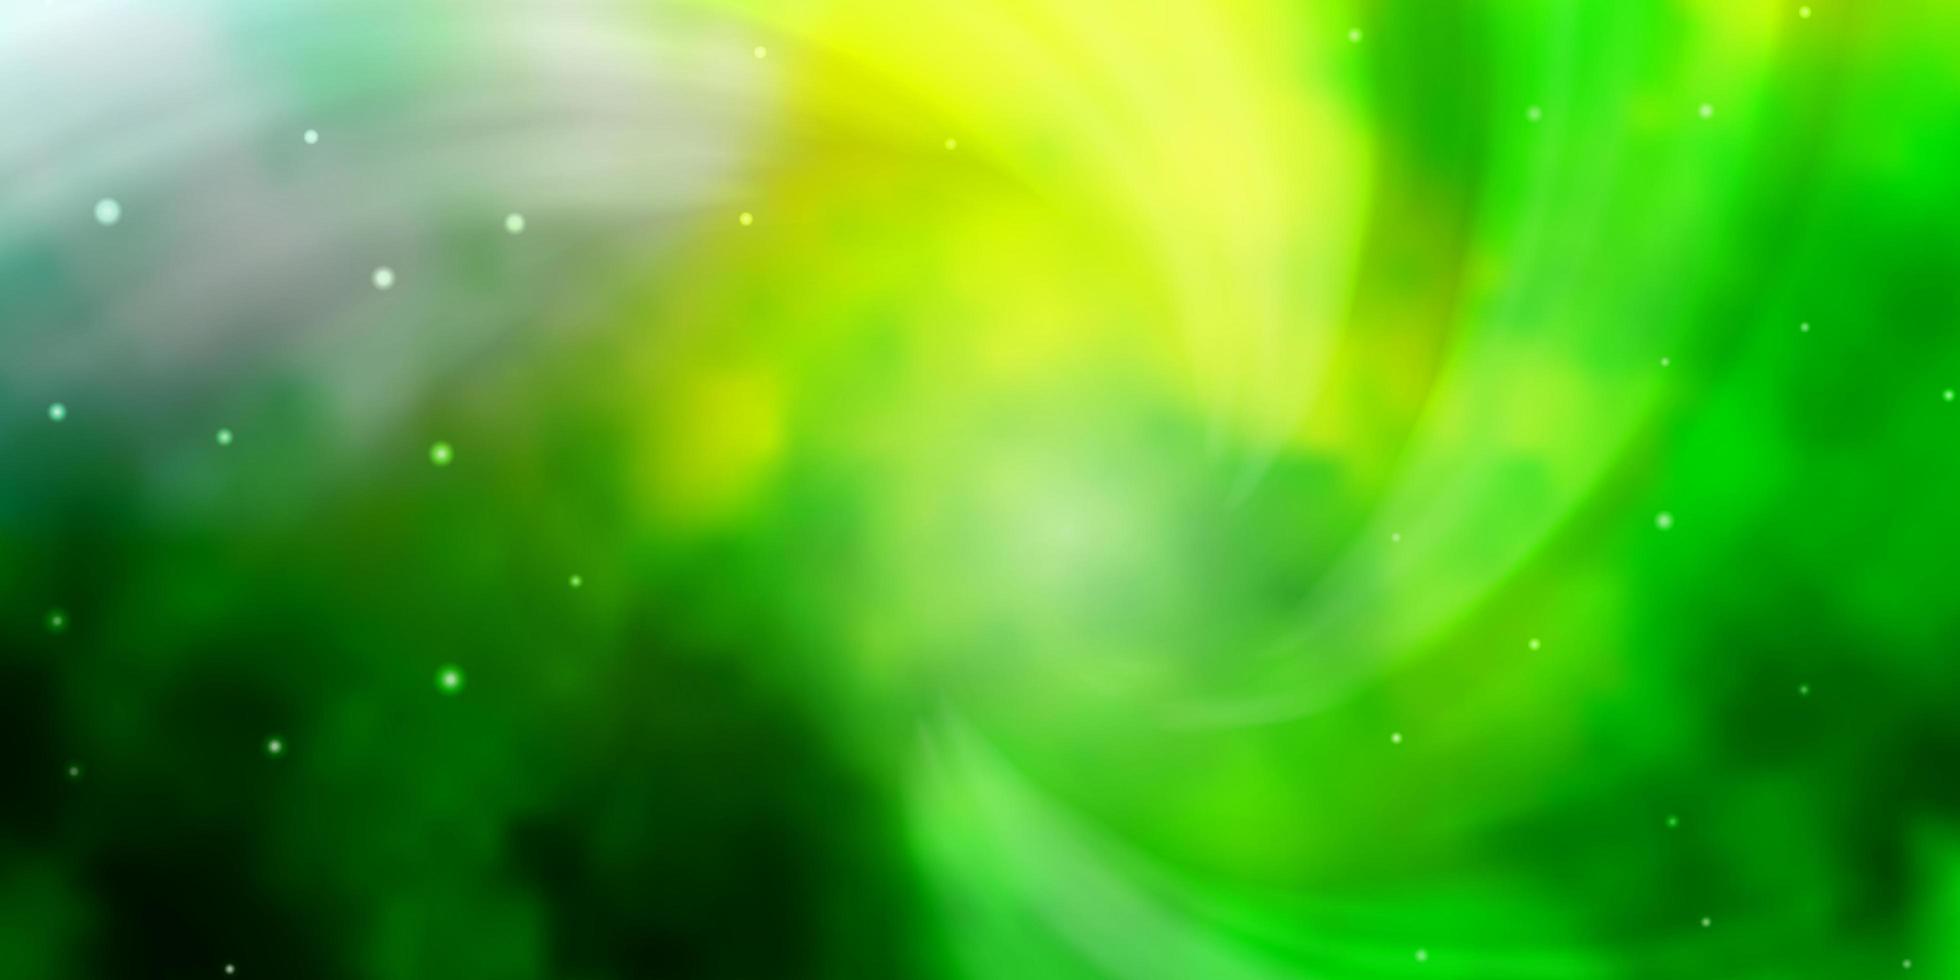 ljusgrön, gul vektorbakgrund med små och stora stjärnor. lysande färgglad illustration med små och stora stjärnor. tema för mobiltelefoner. vektor